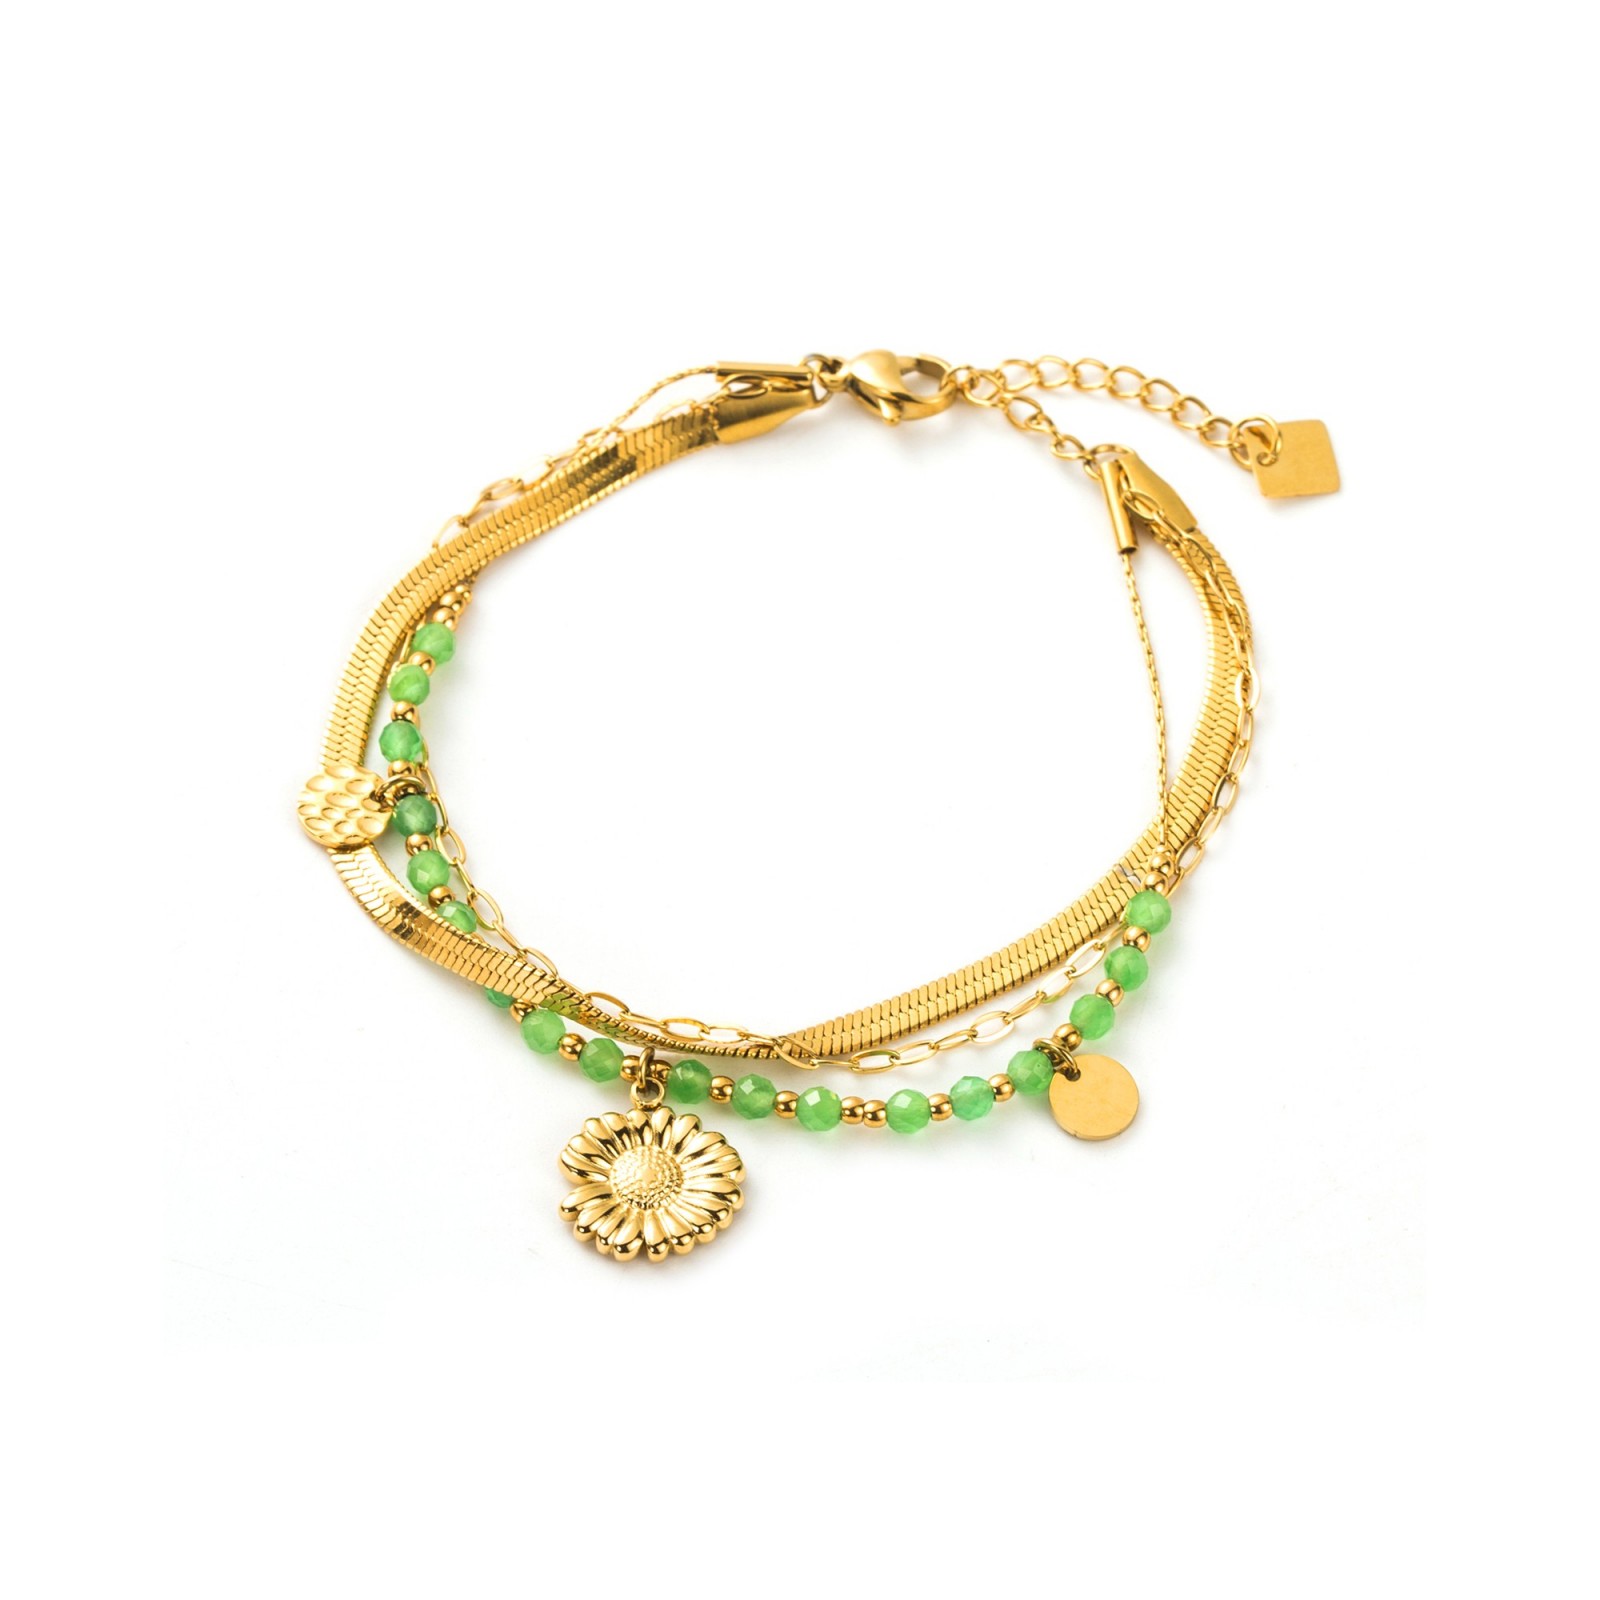 Bracelet Color:Green